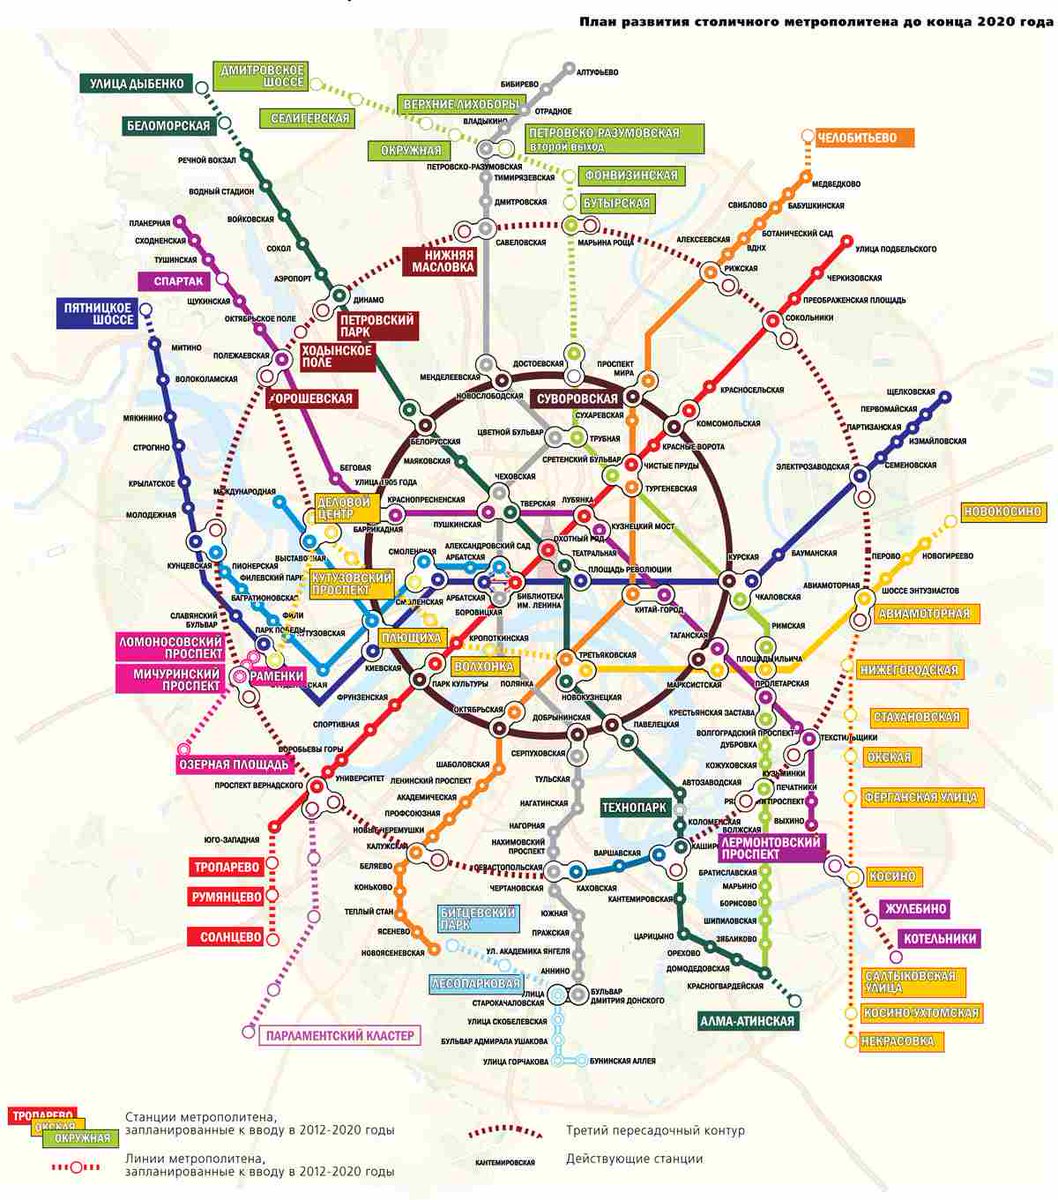 Станция метро владыкино на схеме метро москвы